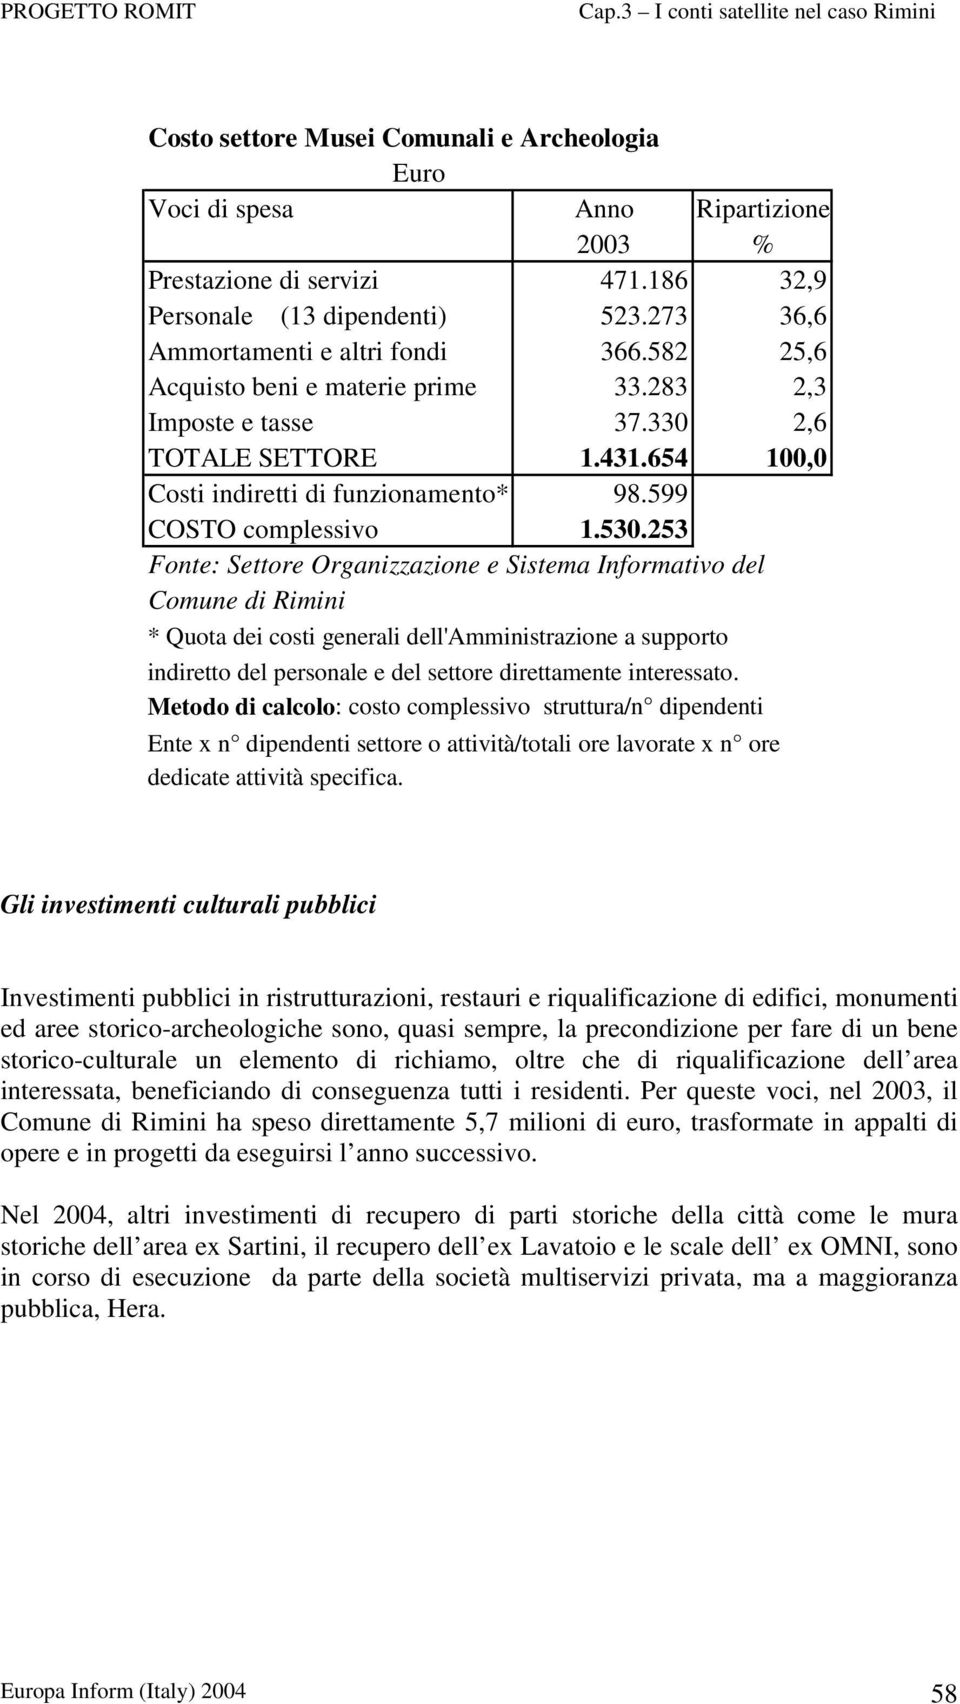 253 Fonte: Settore Organizzazione e Sistema Informativo del Comune di Rimini * Quota dei costi generali dell'amministrazione a supporto indiretto del personale e del settore direttamente interessato.